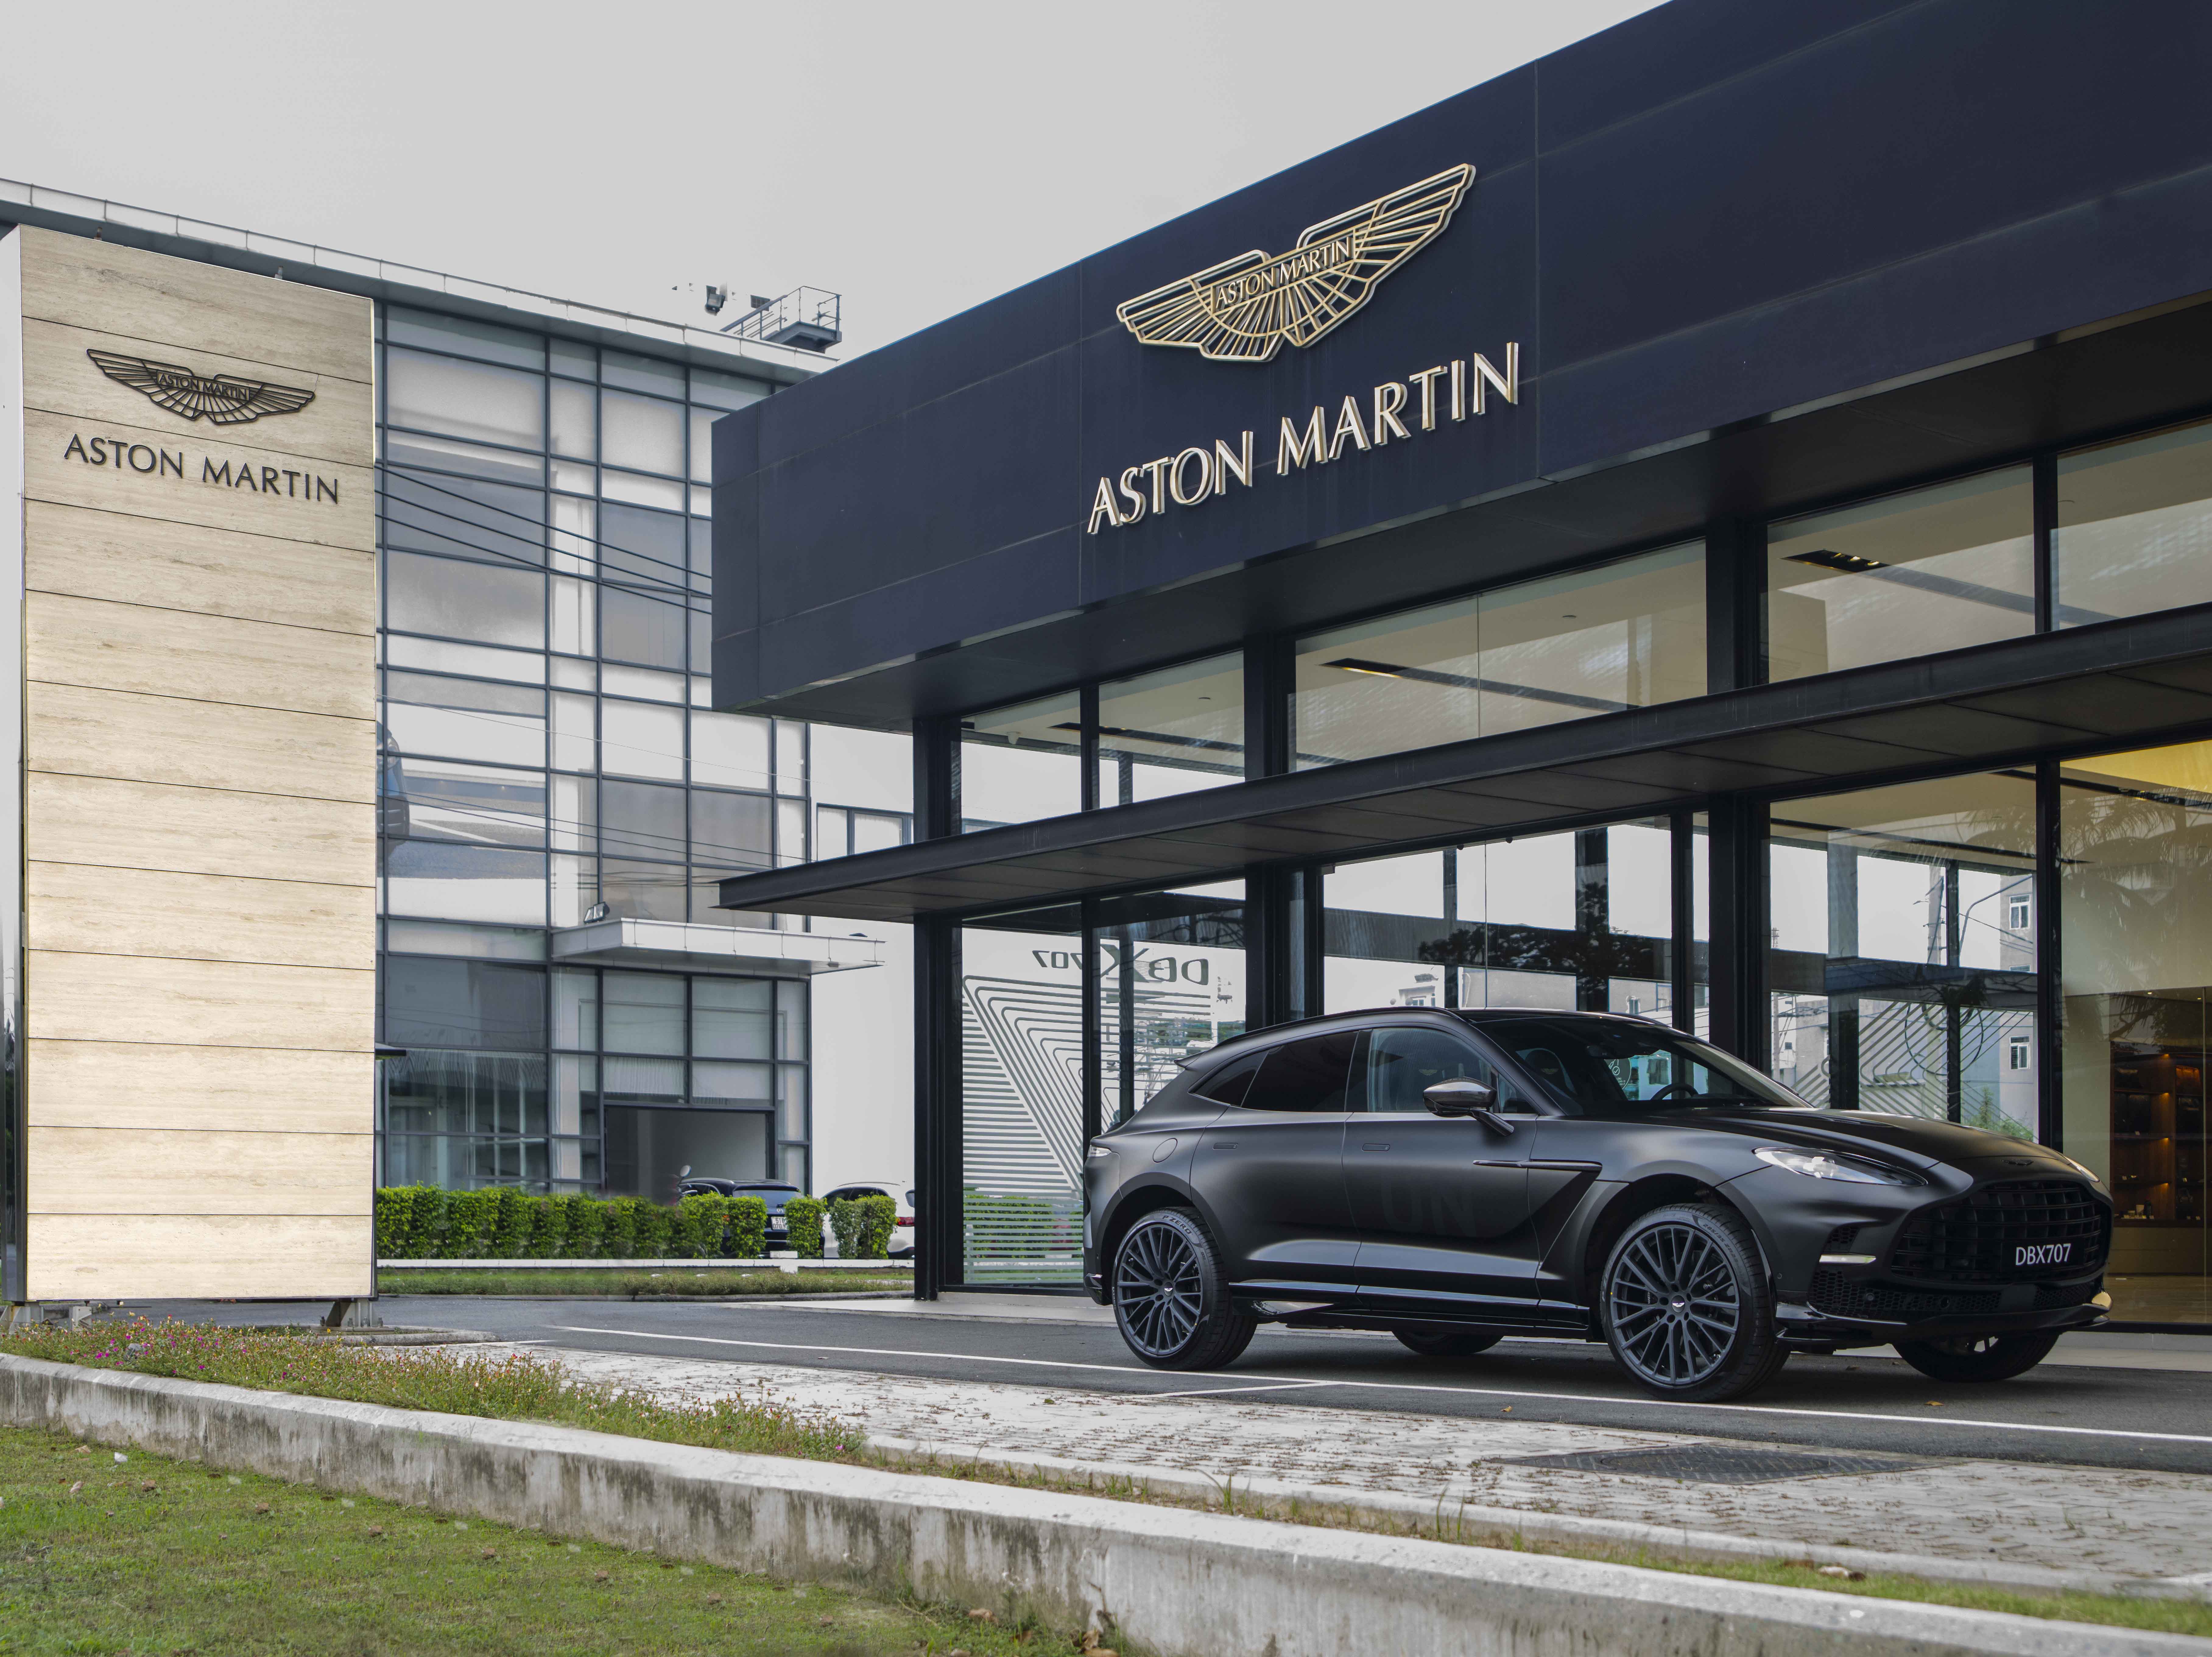 Mẫu SUV hiệu xuất cao Aston Martin DBX707 có giá hơn 21,7 tỷ đồng tại VN Aston Martin DBX707  (8).jpg